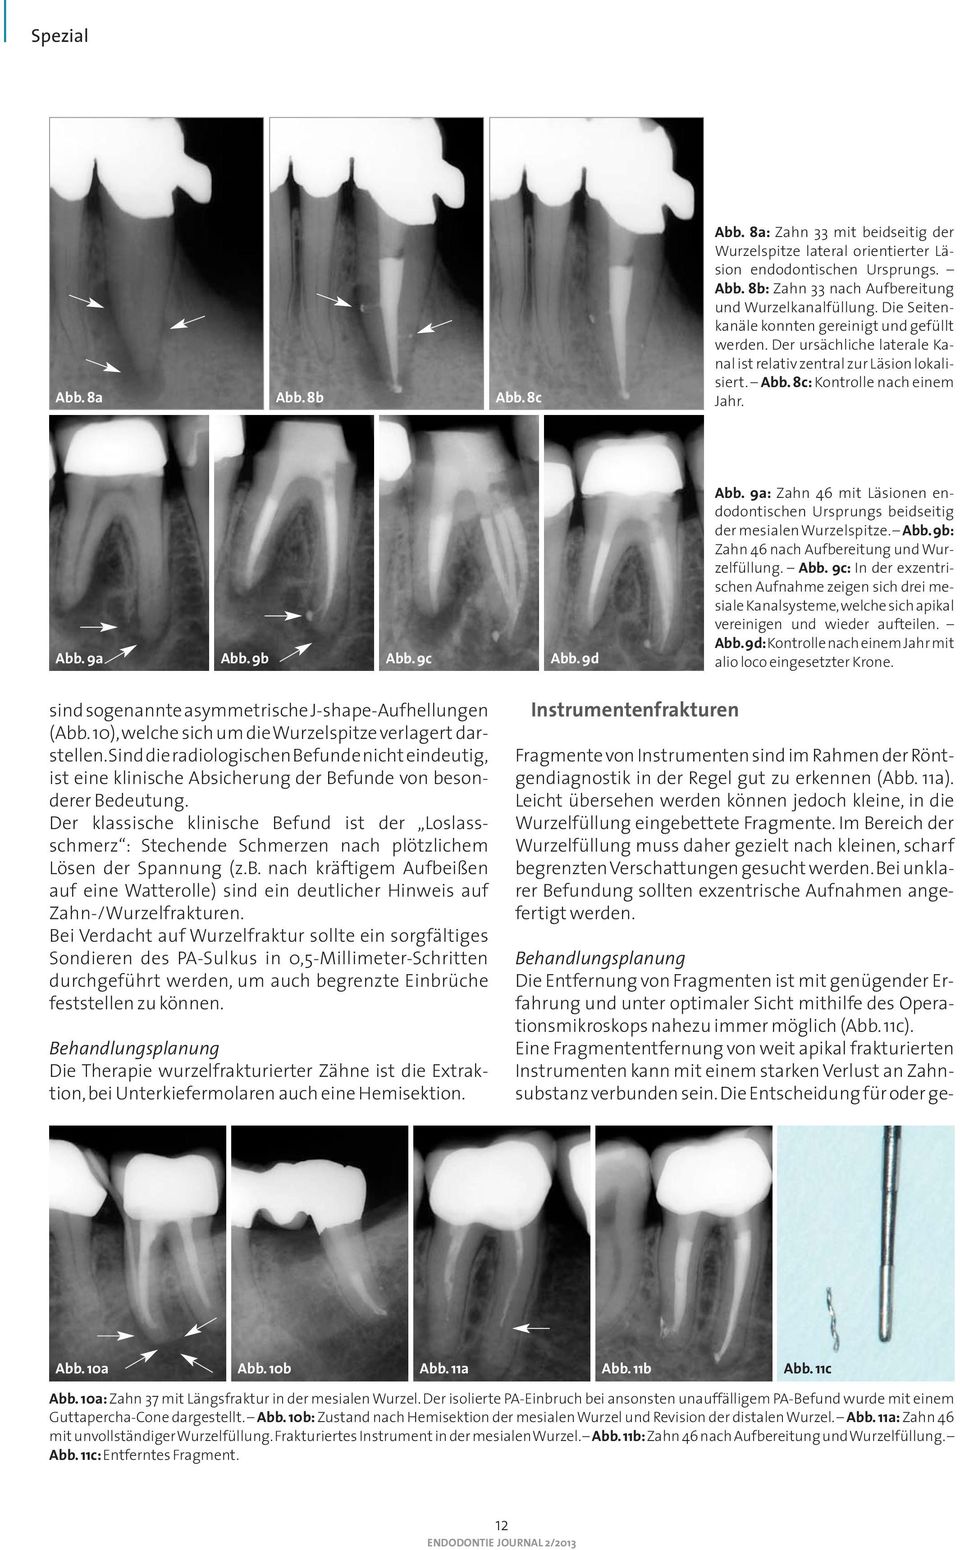 9d Abb. 9a: Zahn 46 mit Läsionen en - dodontischen Ursprungs beidseitig der mesialen Wurzelspitze. Abb. 9b: Zahn 46 nach Aufbereitung und Wurzelfüllung. Abb. 9c: In der exzentrischen Aufnahme zeigen sich drei mesiale Kanalsysteme, welche sich apikal vereinigen und wieder aufteilen.